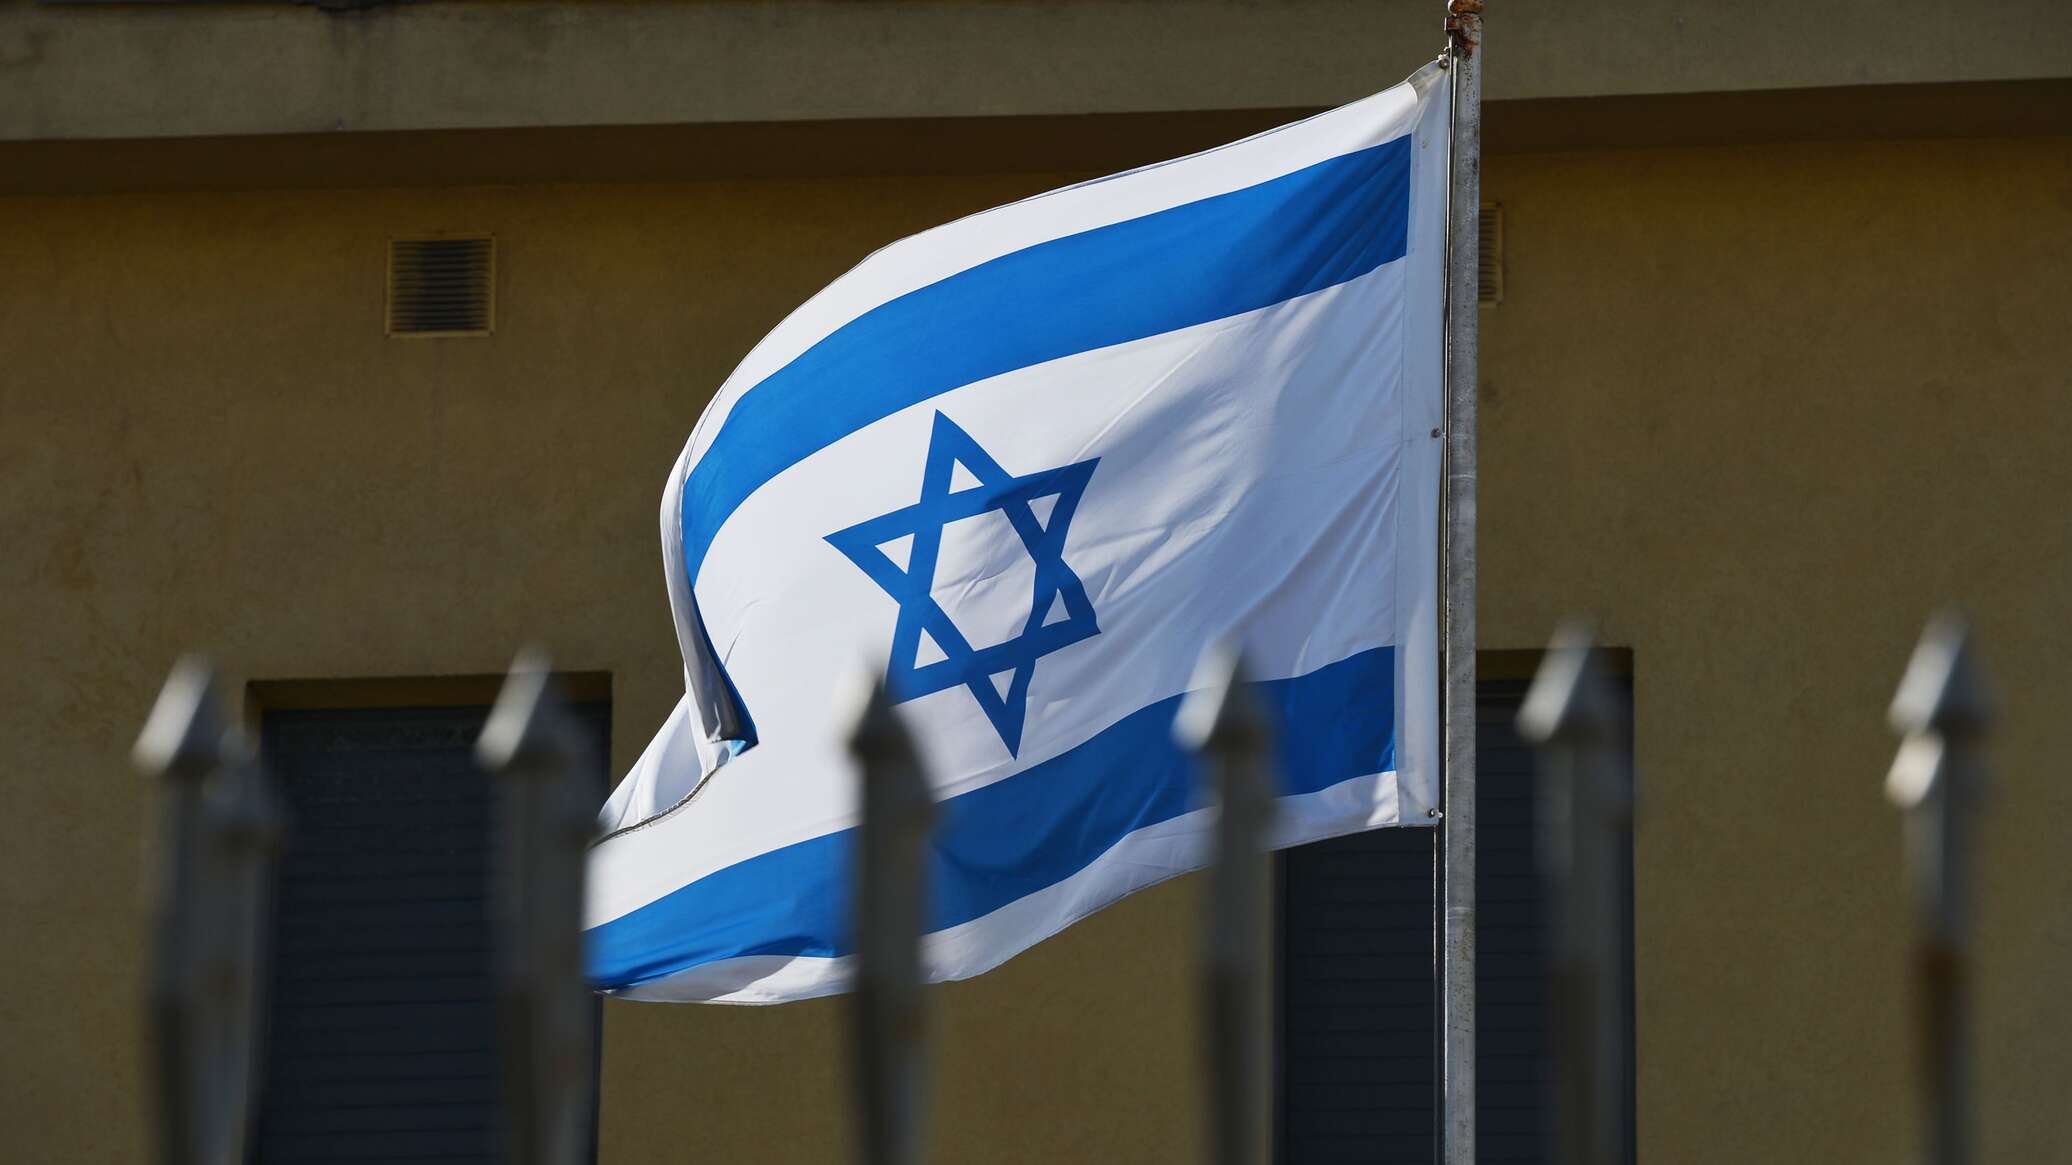 الشاباك يعتقل 13 شخصا من سكان الشمال الإسرائيلي خططوا لتنفيذ هجمات في مواقع استراتيجية بالبلاد